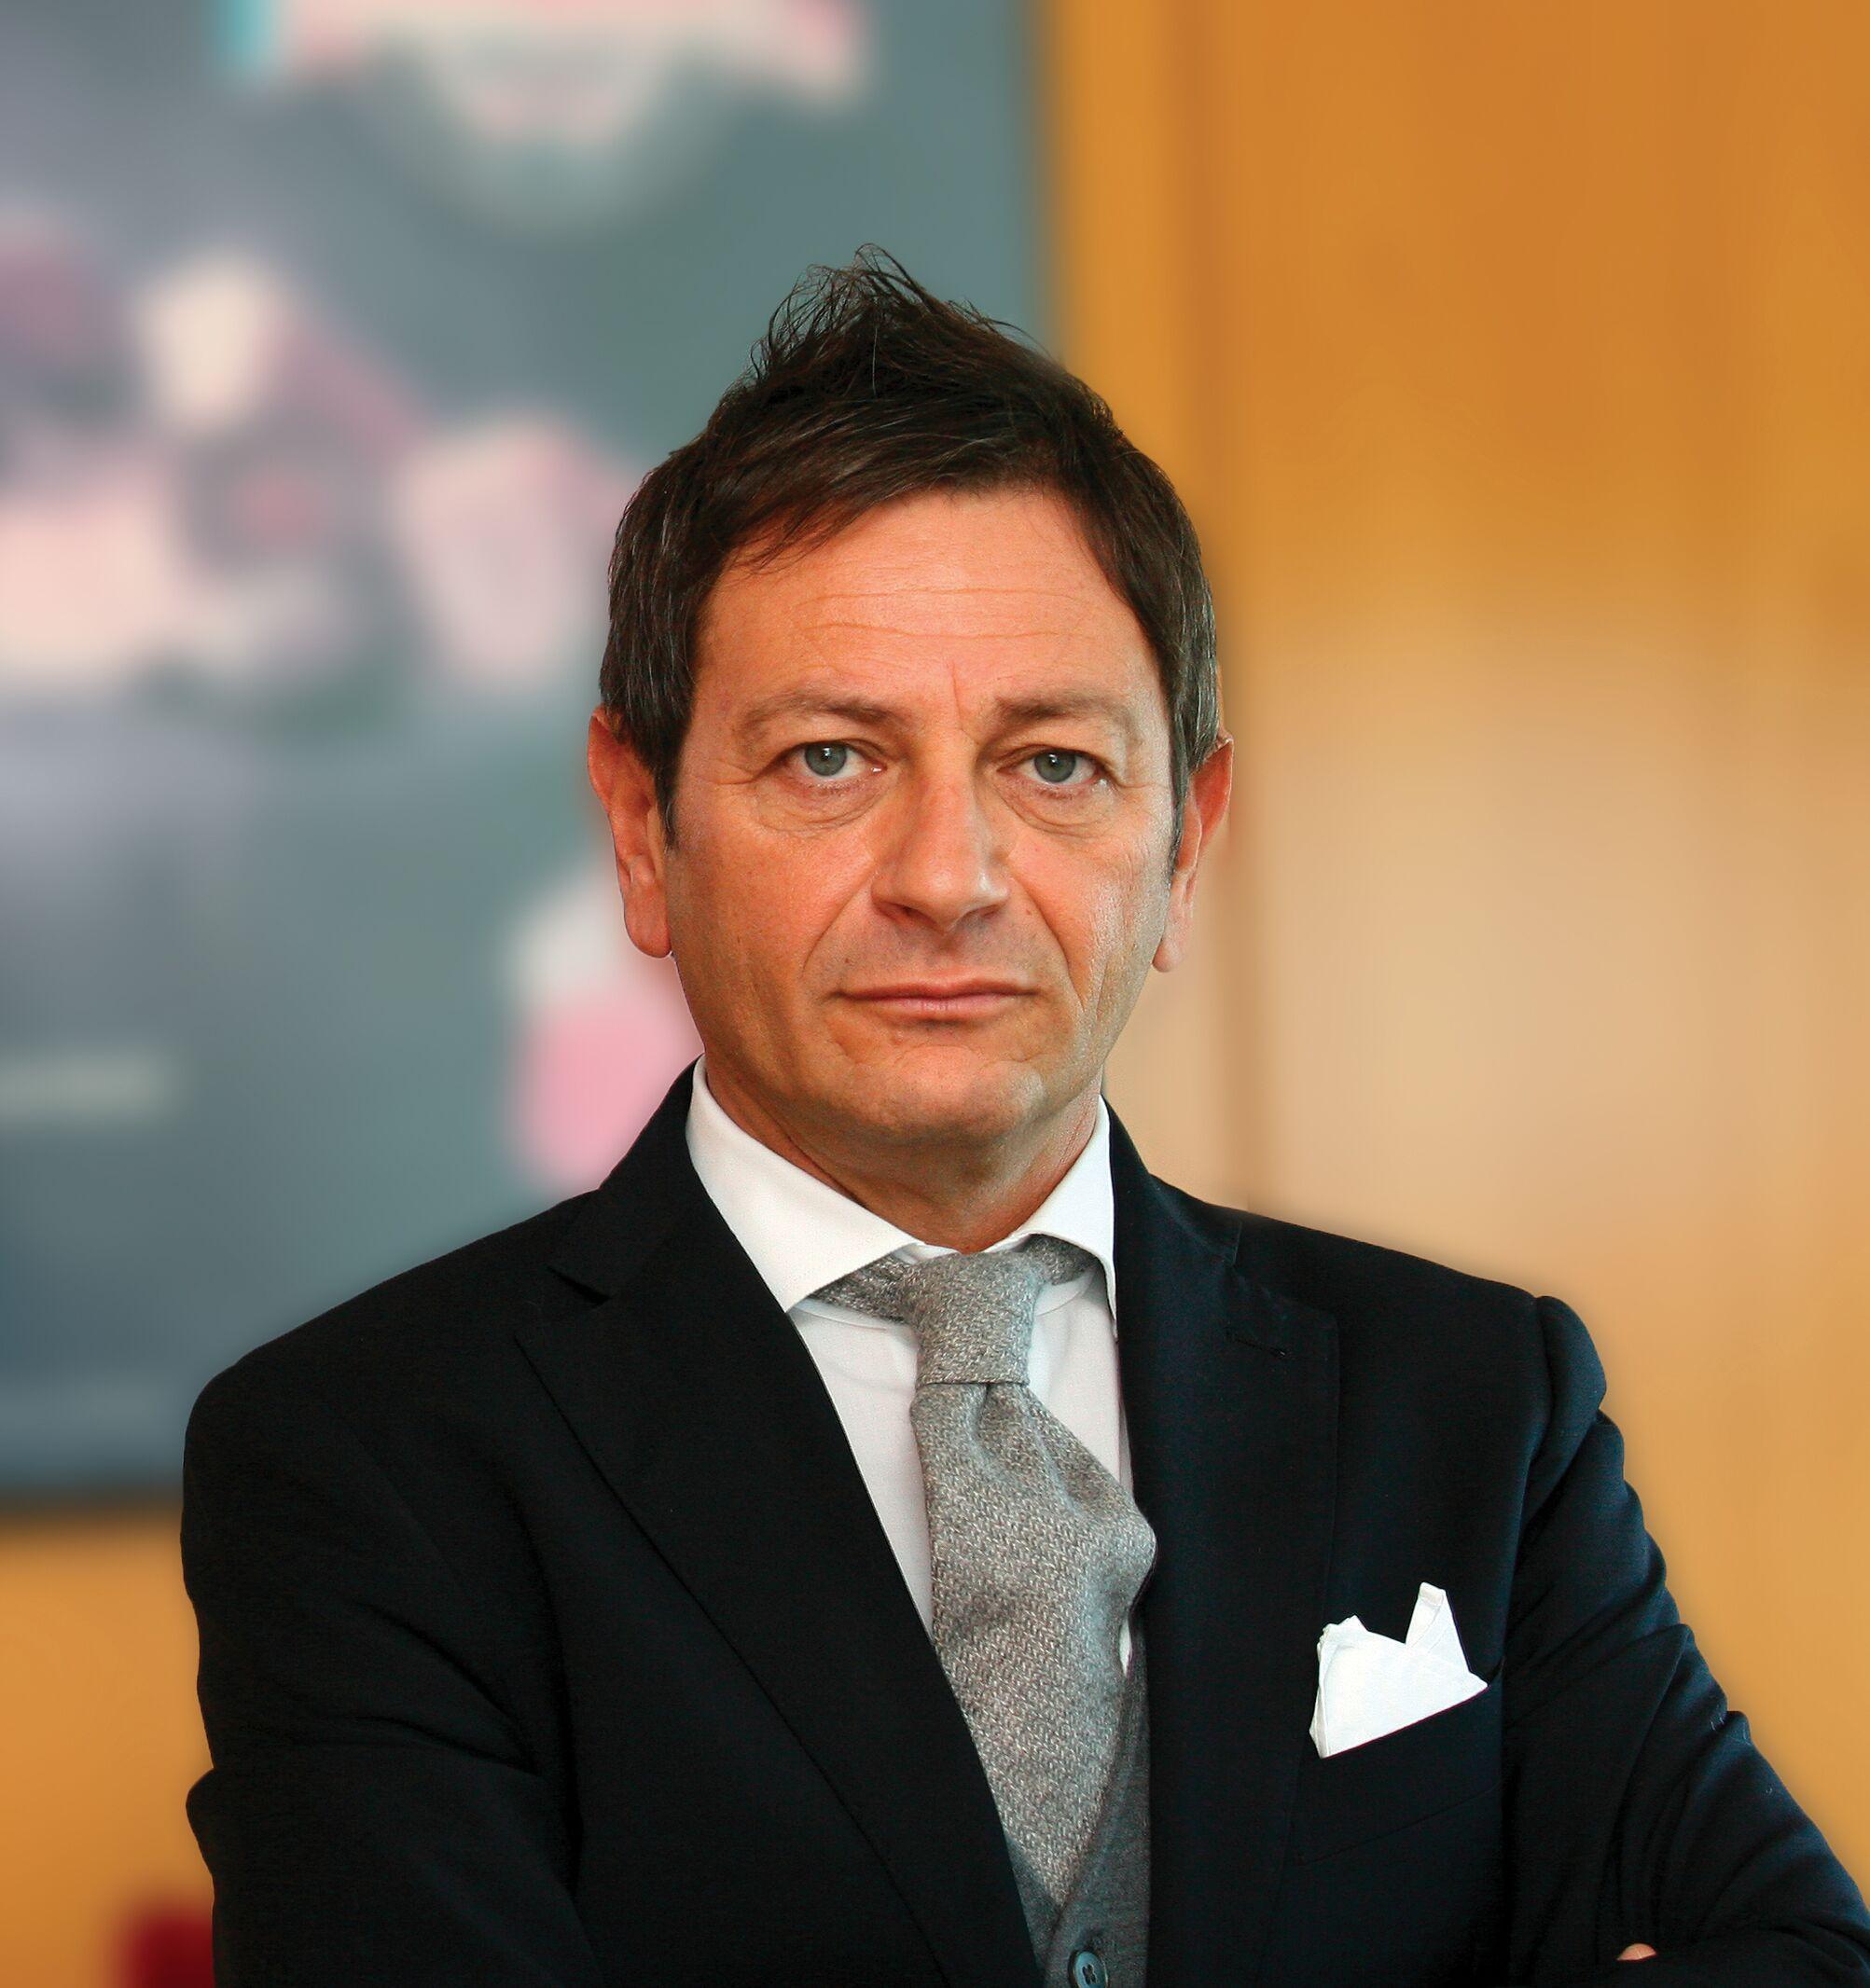 Antonio Miglioli è il nuovo Direttore Commerciale di Becher Spa